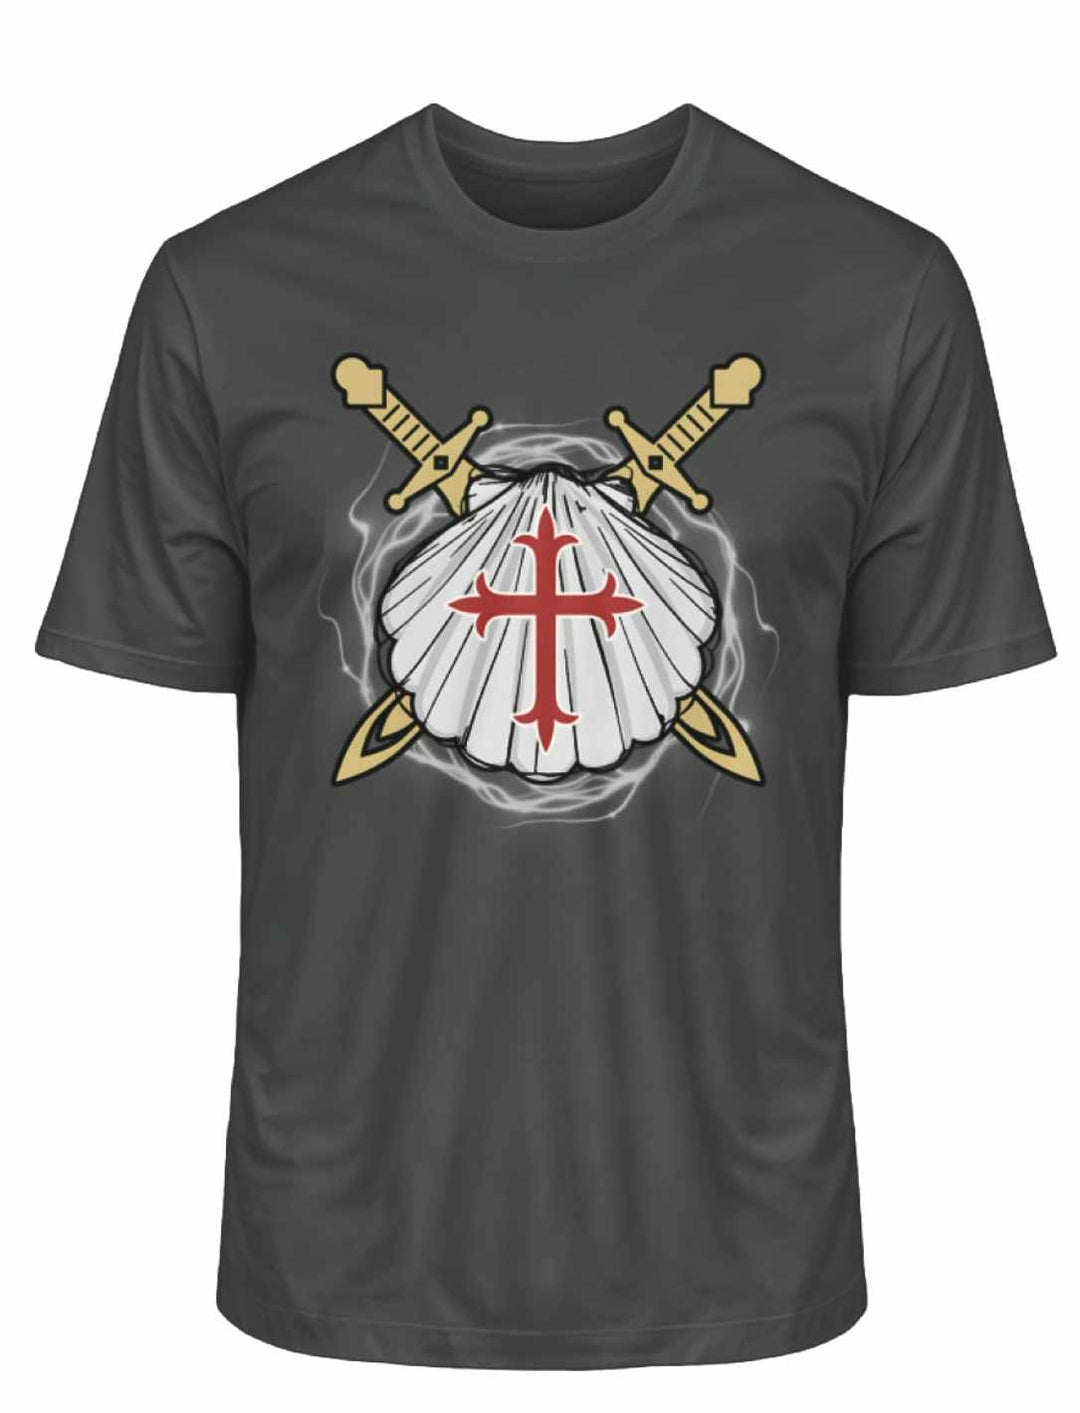 Anthrazitfarbenes 'Wächter des Sternenwegs' T-Shirt, verziert mit den Zeichen des Jakobswegs.